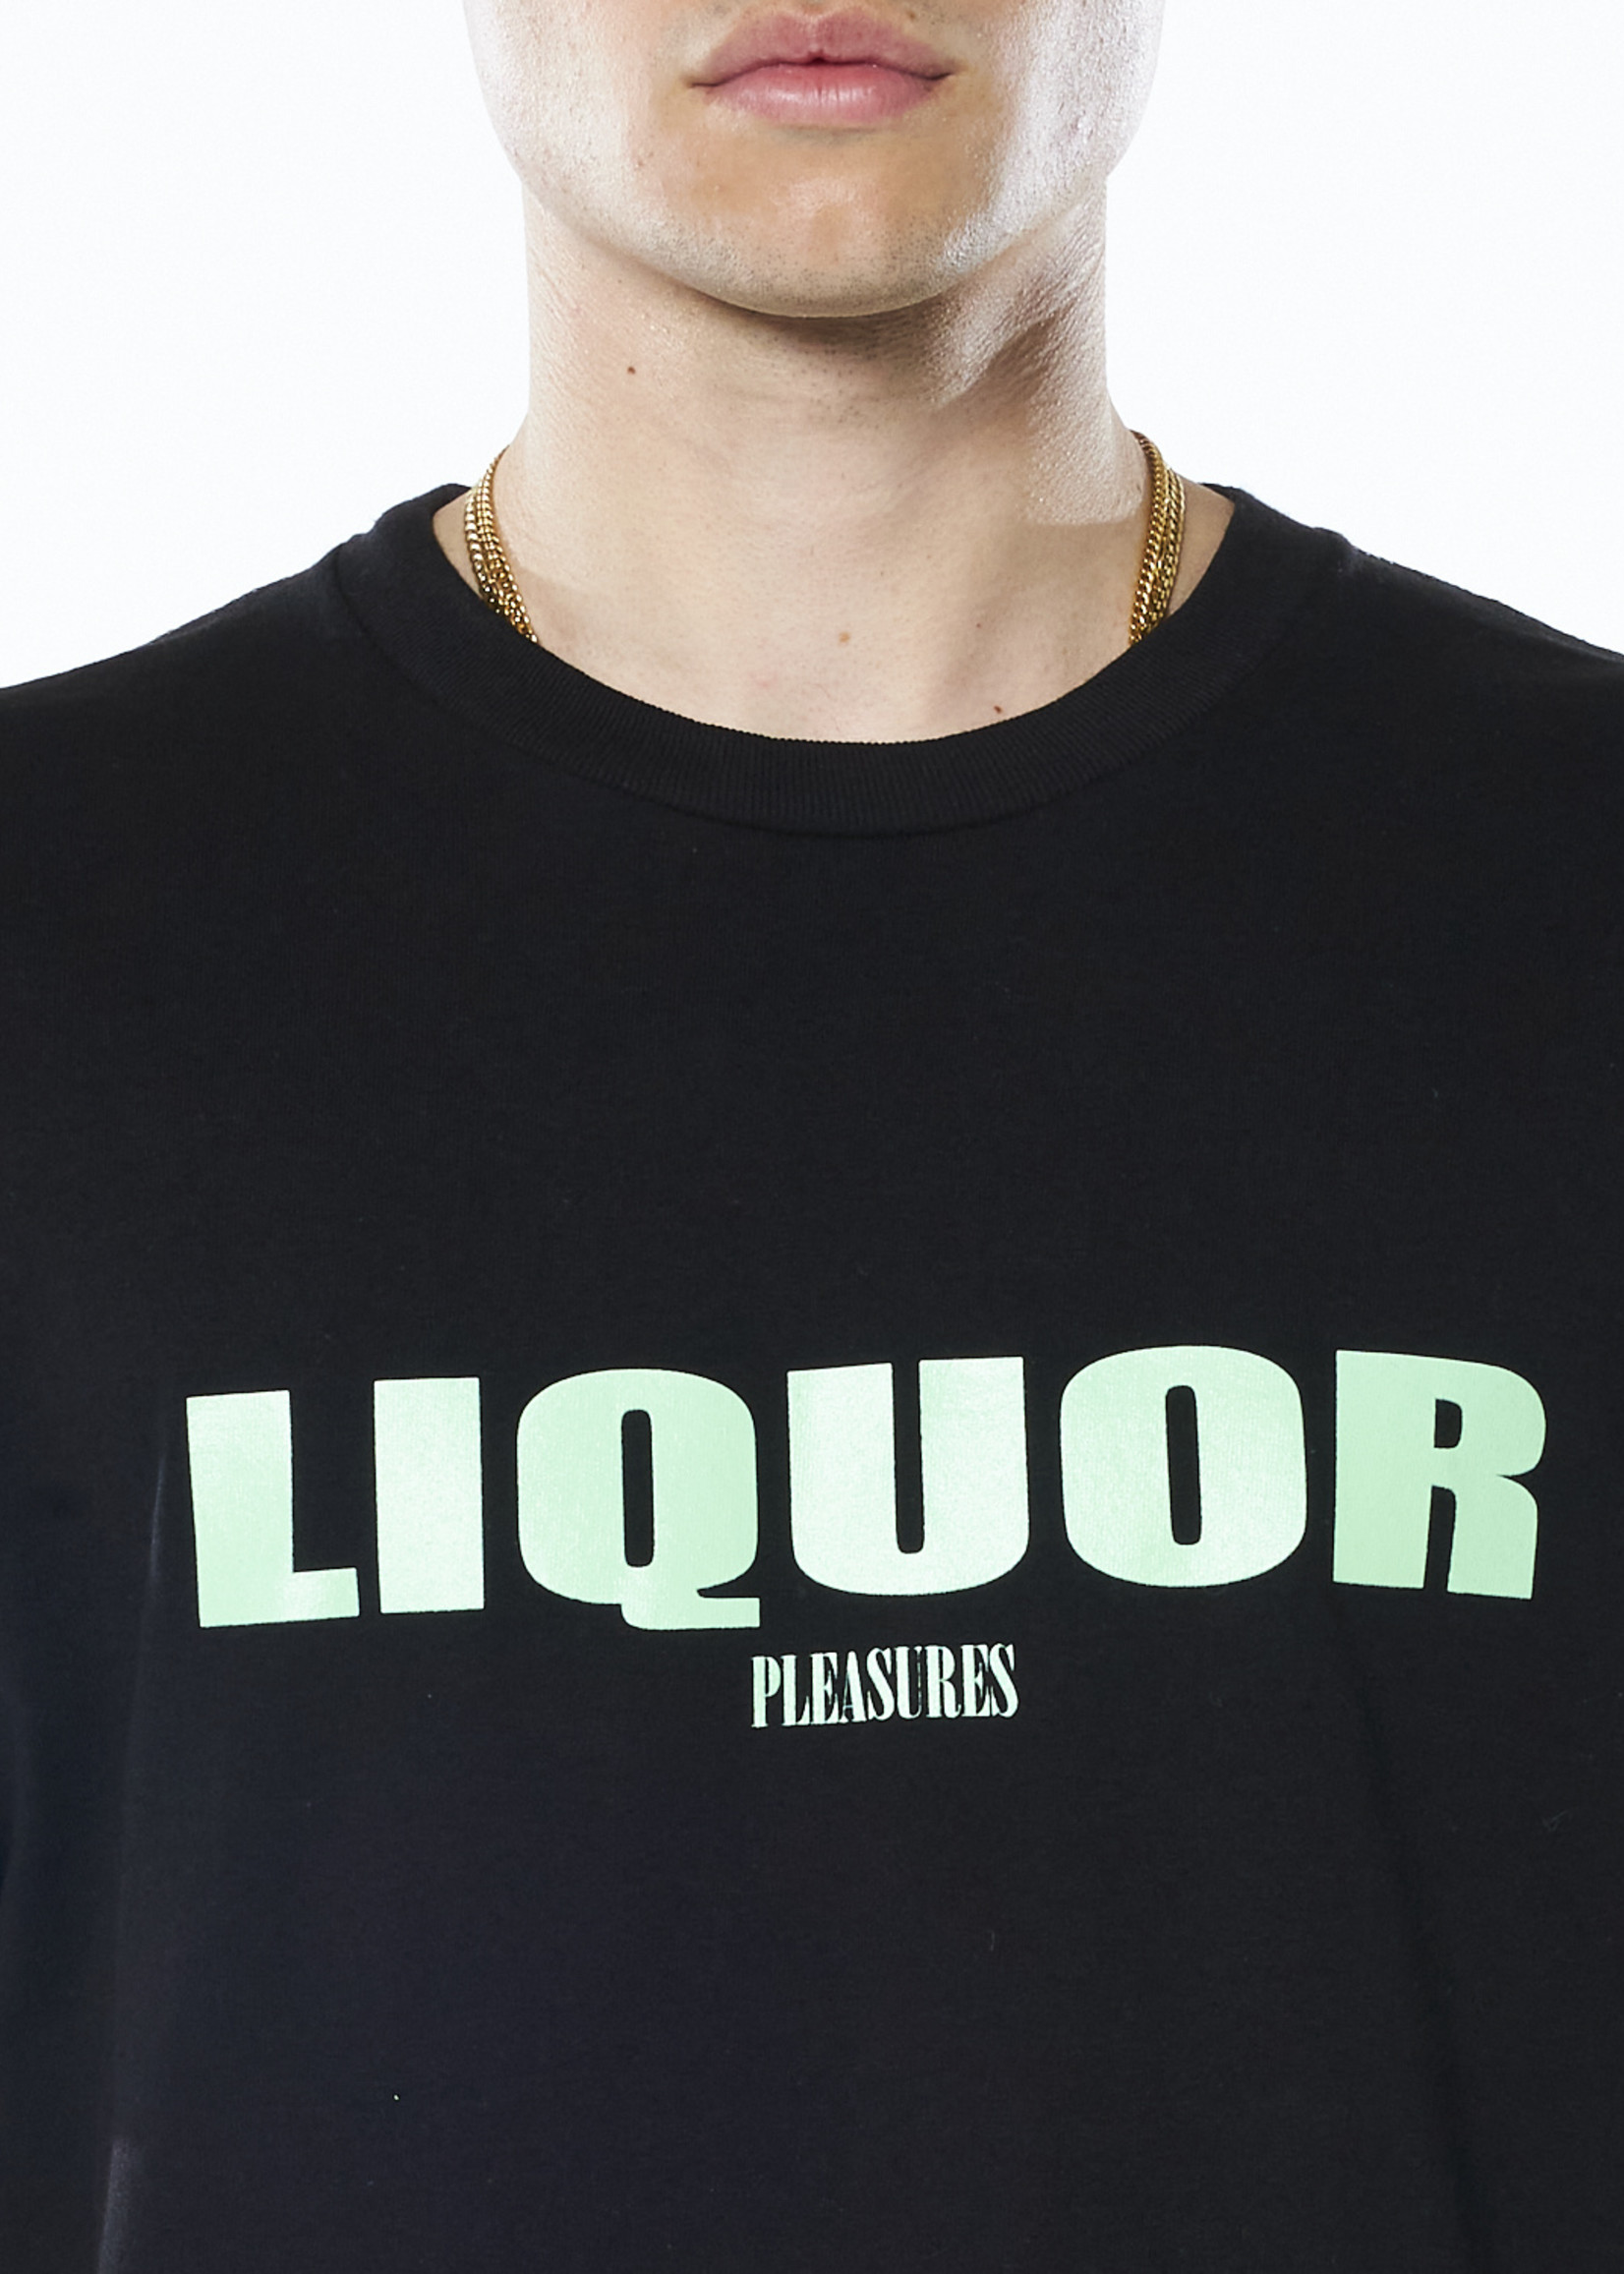 PLEASURES Liquor T-shirt in Black